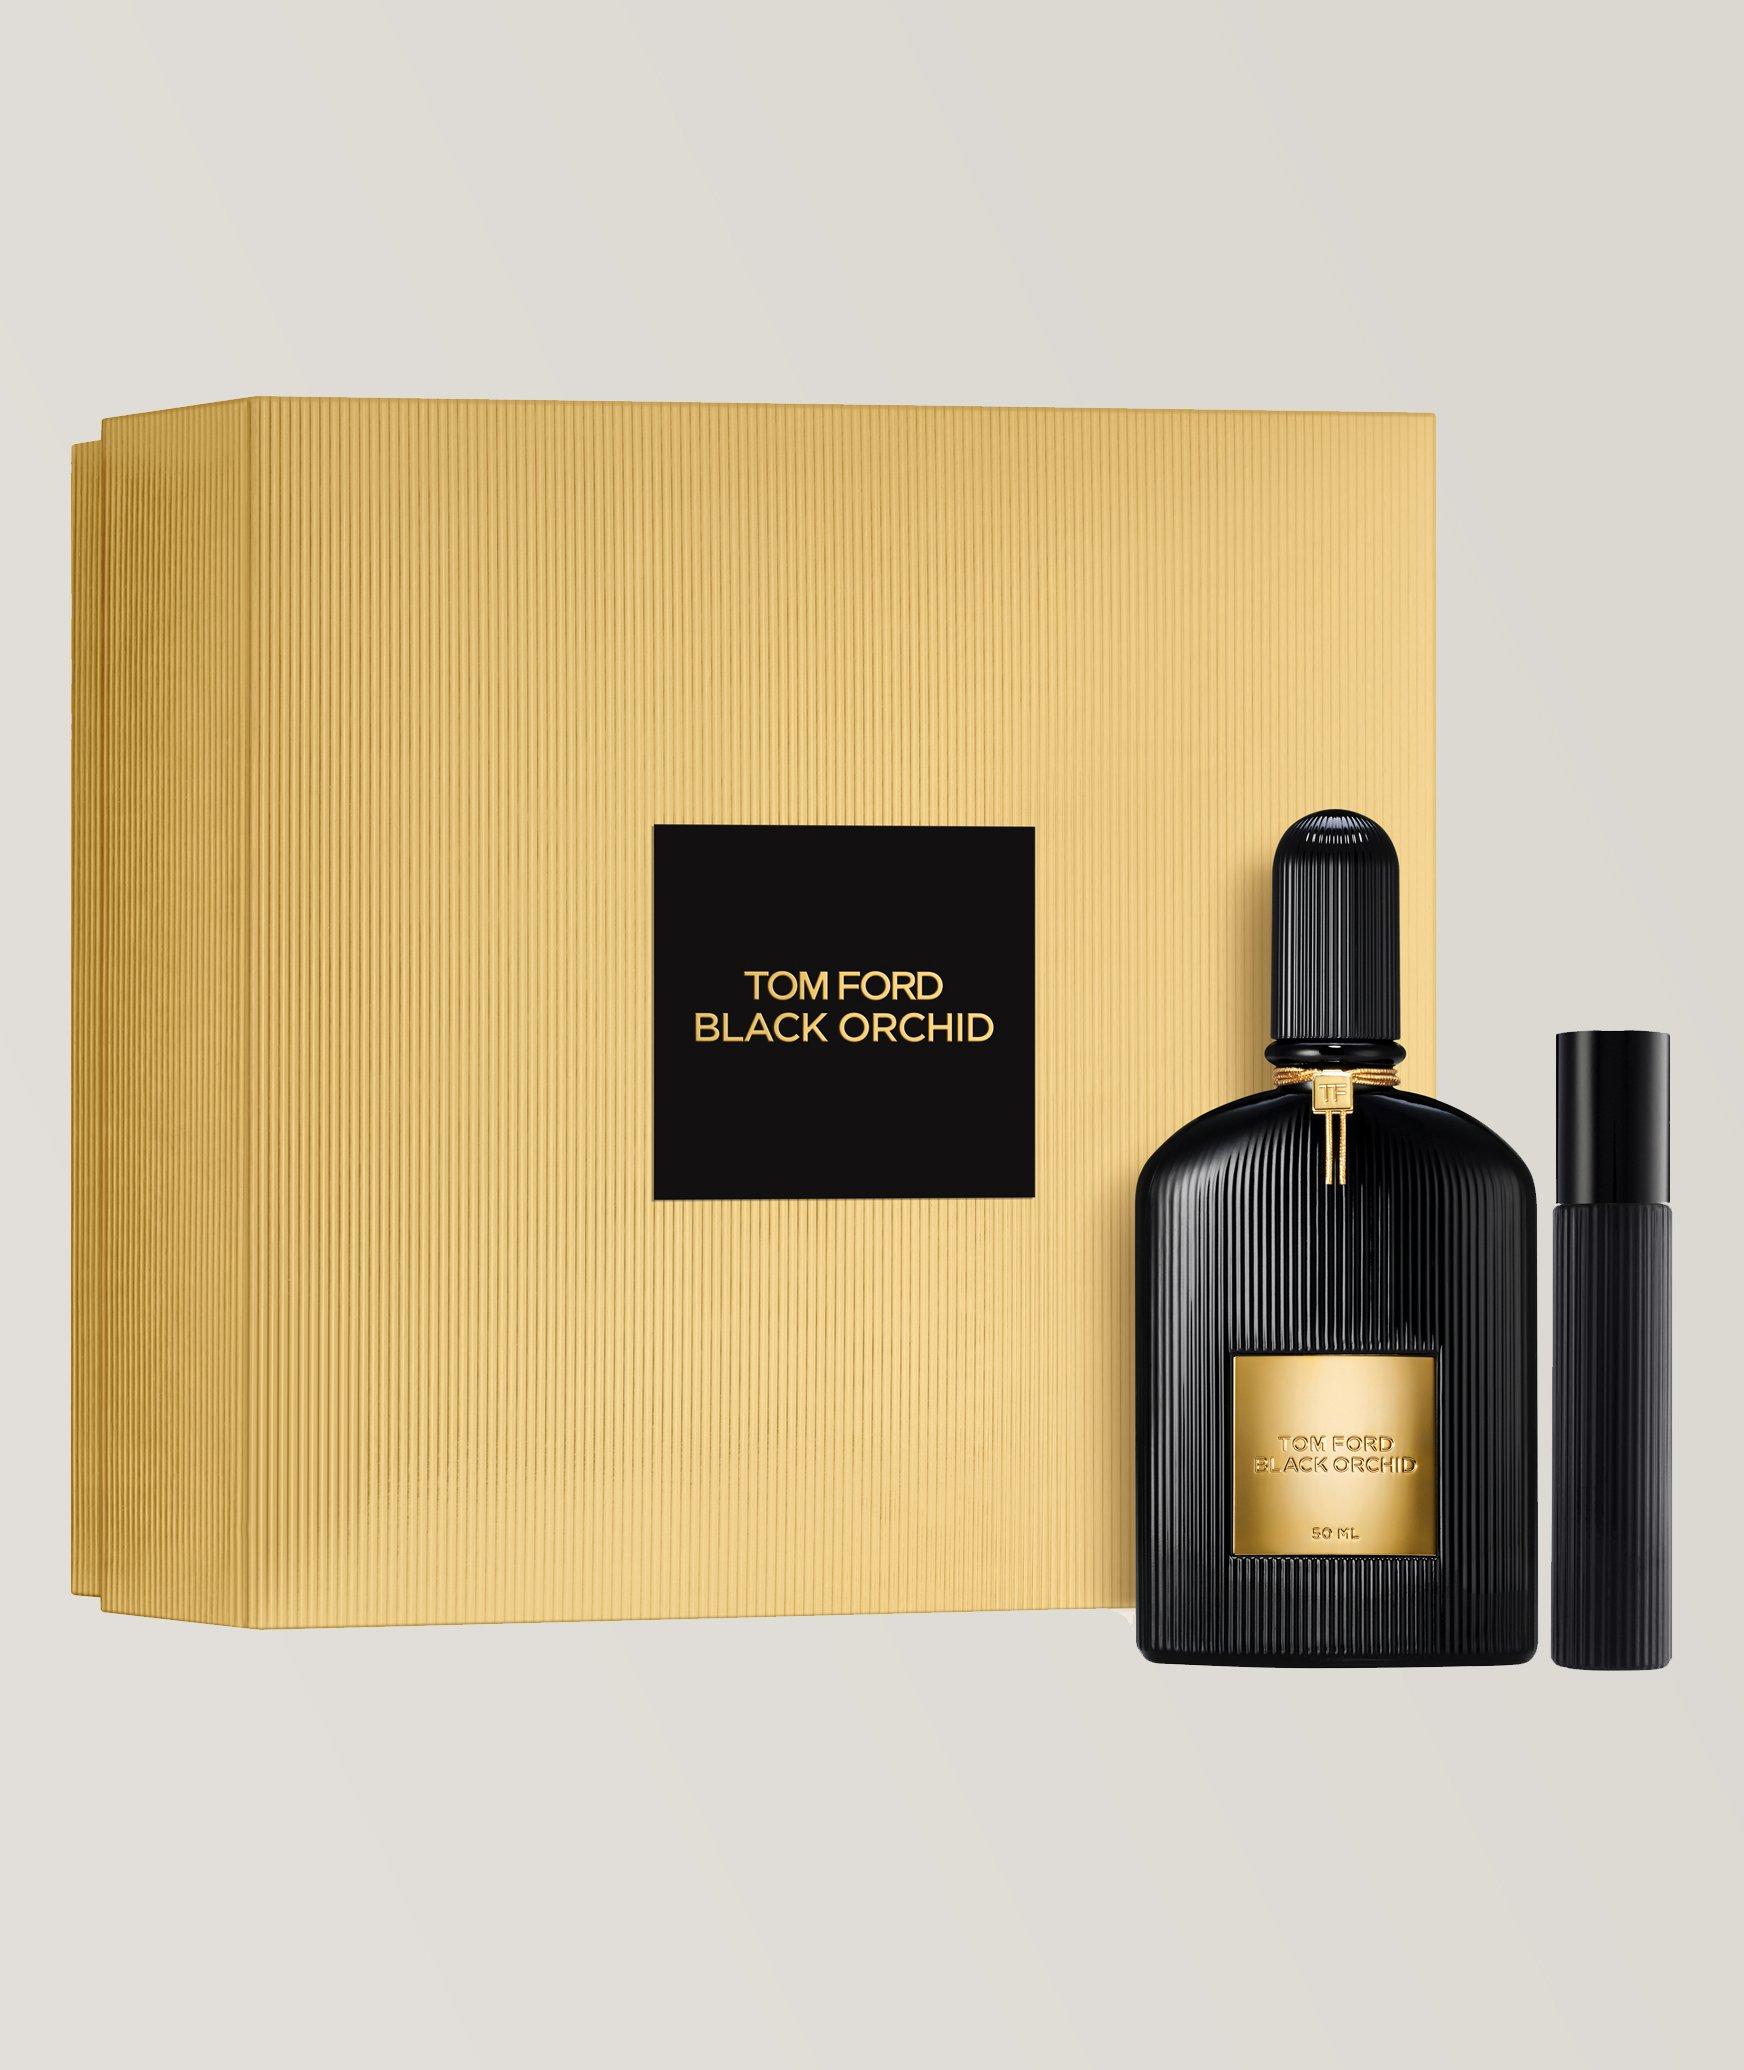 Black Orchid Eau de Parfum Holiday Gift Set image 0